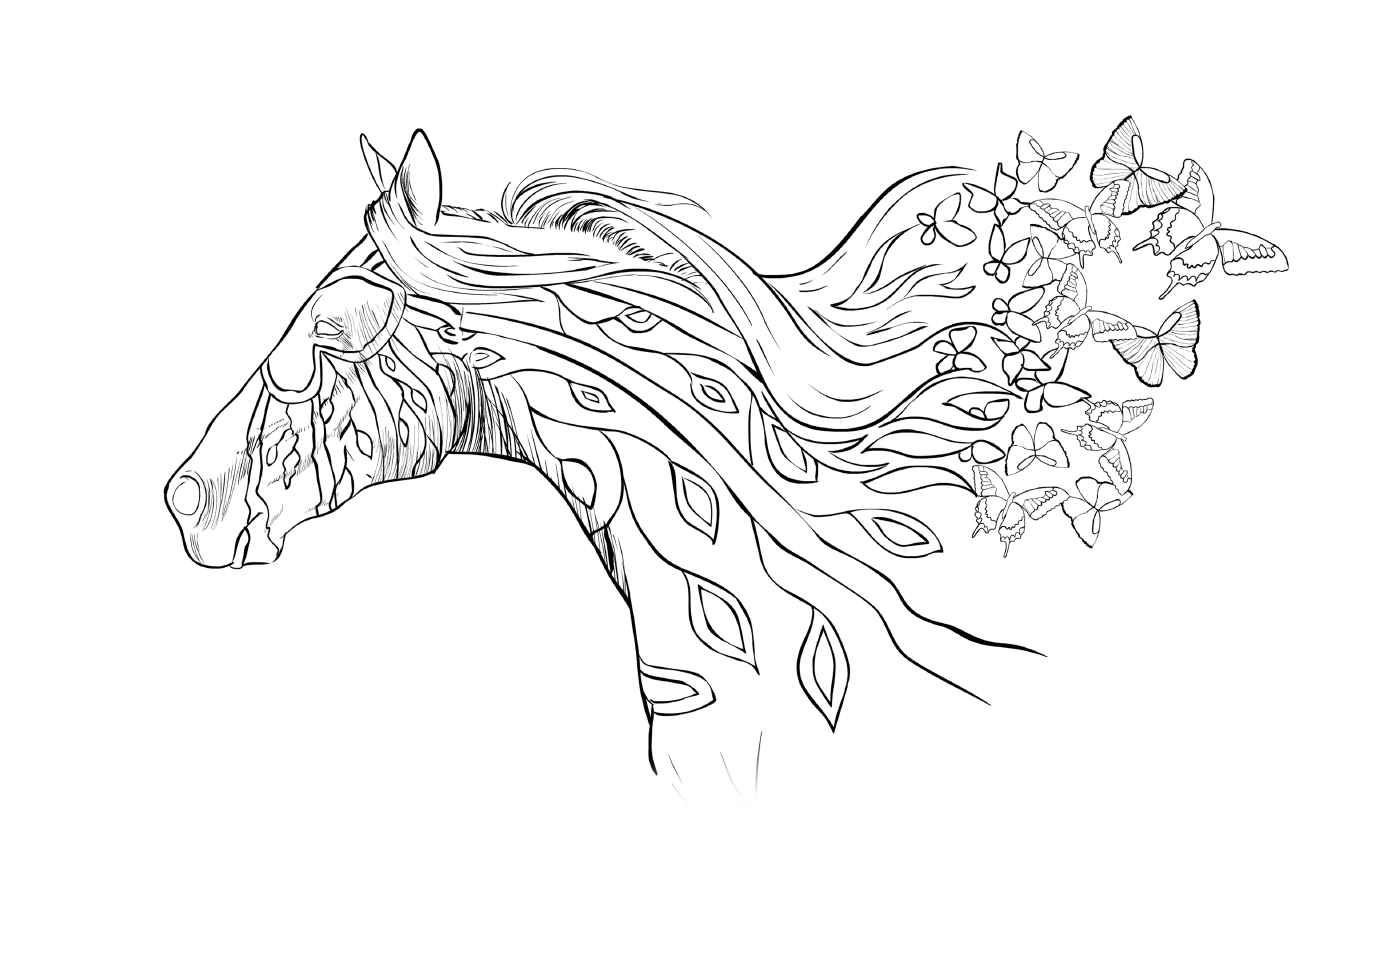  La testa di un cavallo con i fiori tra i capelli 